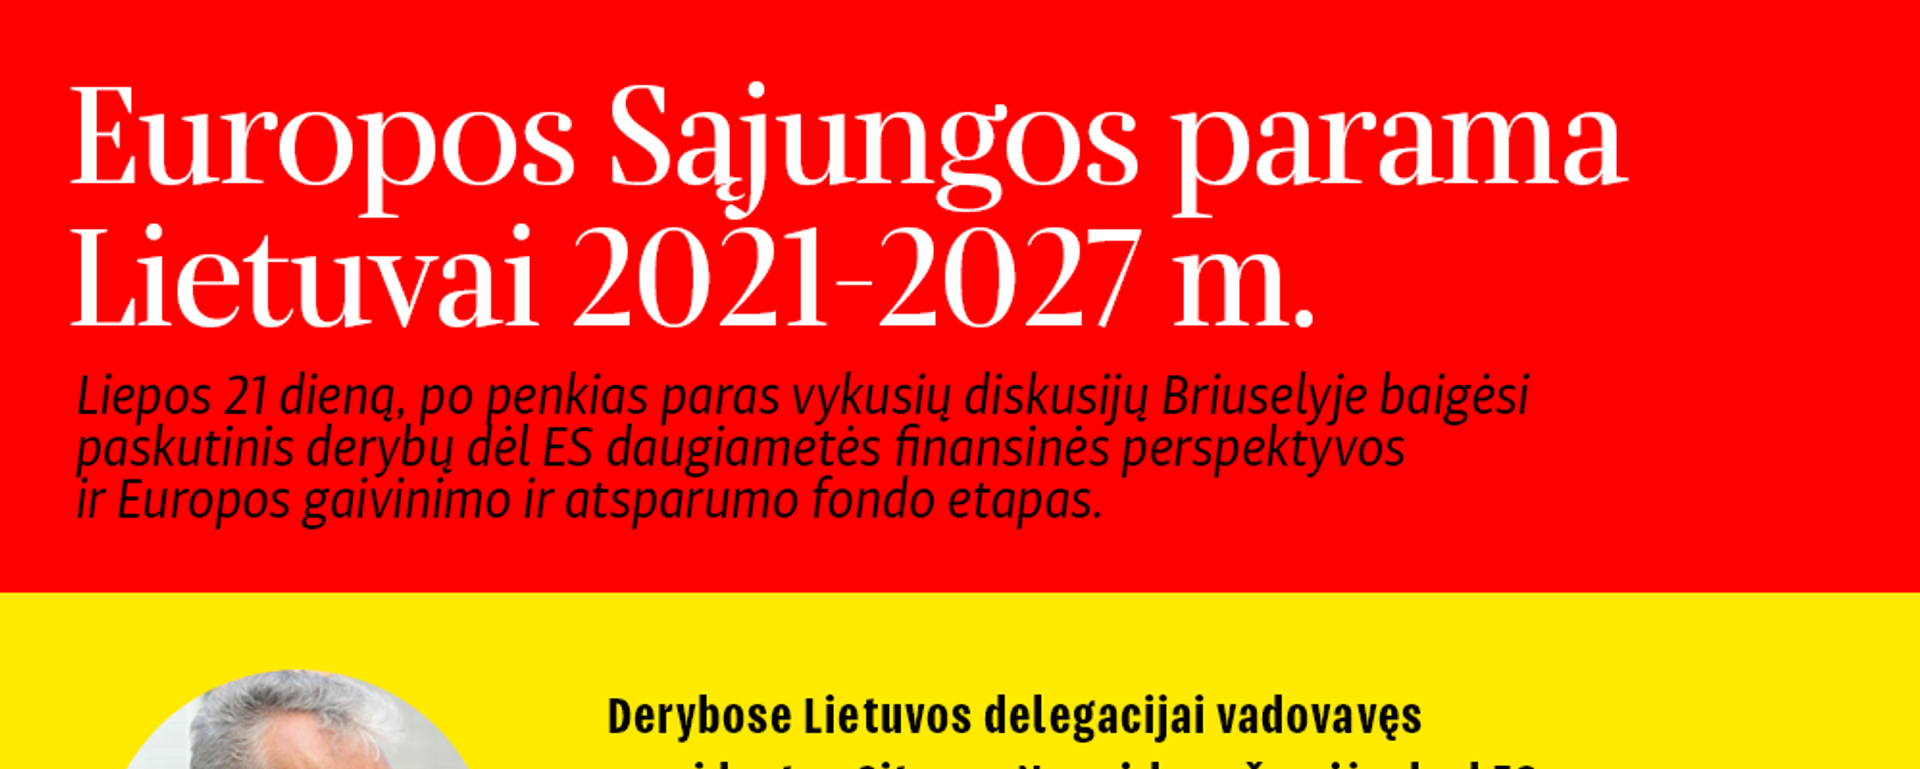 Europos Sąjungos parama Lietuvai 2021-2027 m. - Sputnik Lietuva, 1920, 22.07.2020